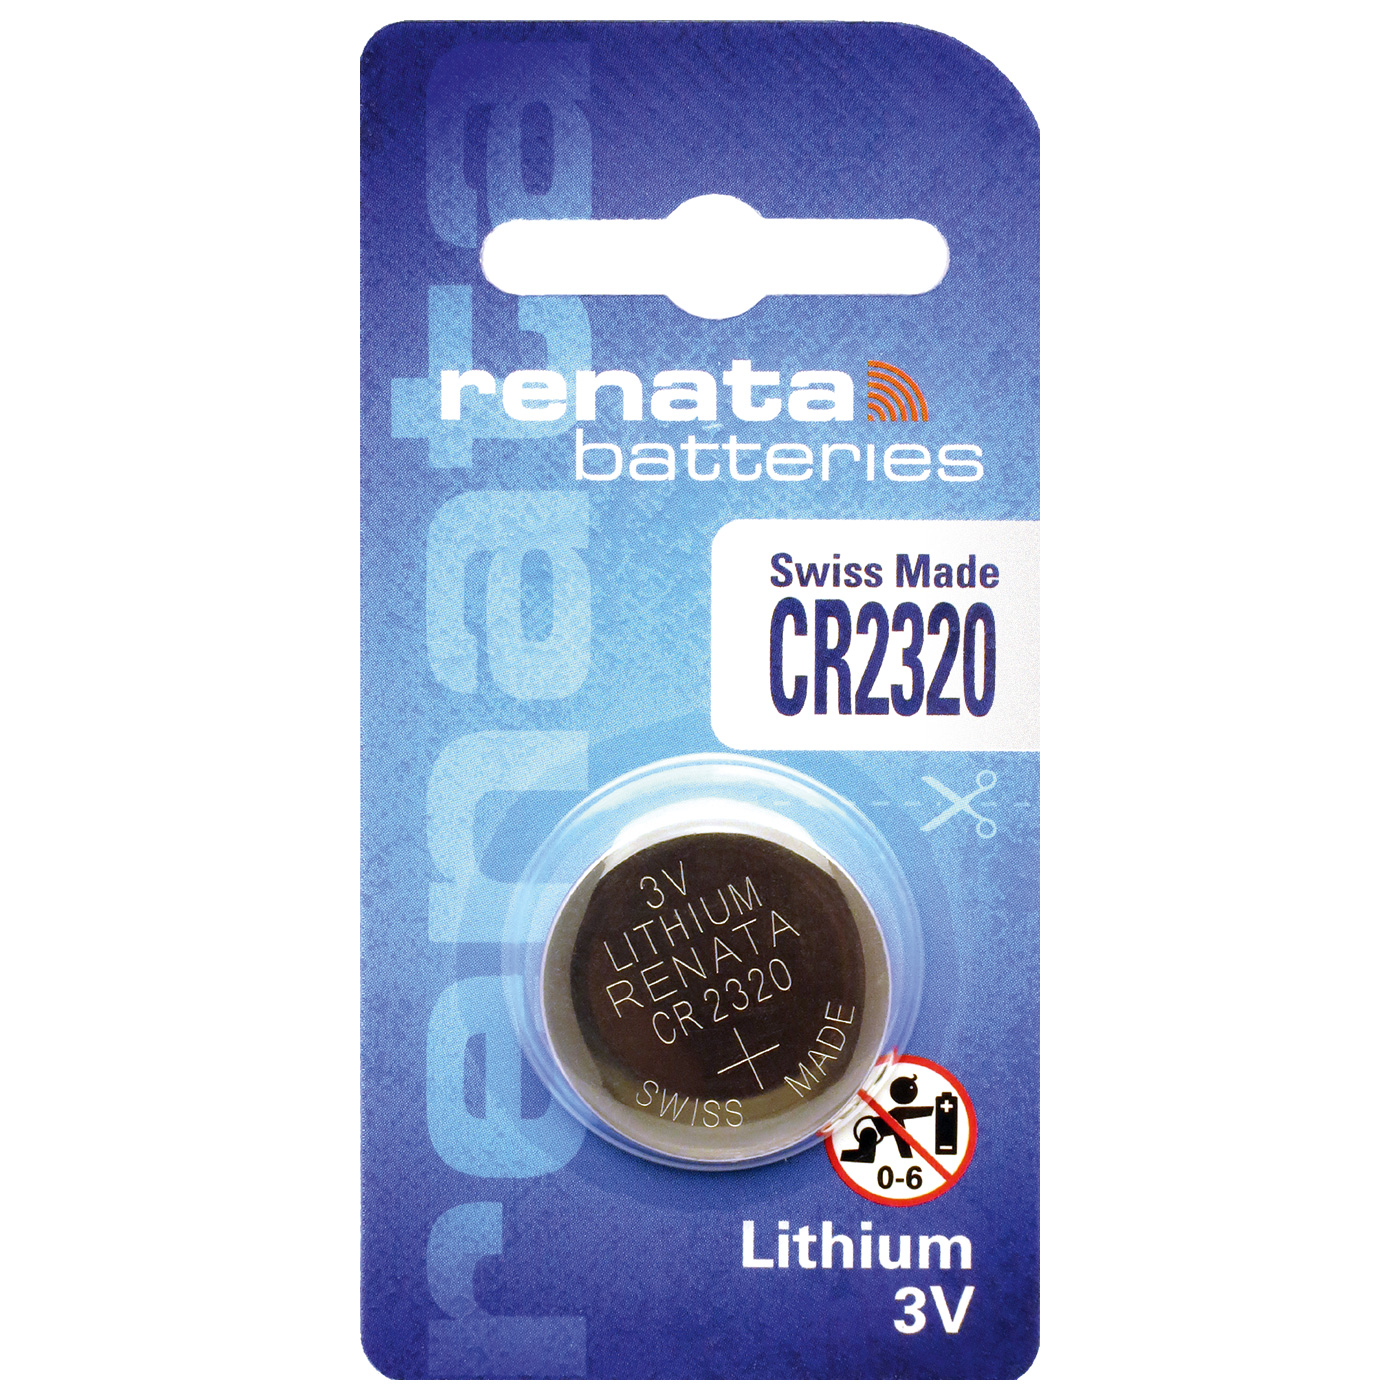 Renata CR 2320 lithium